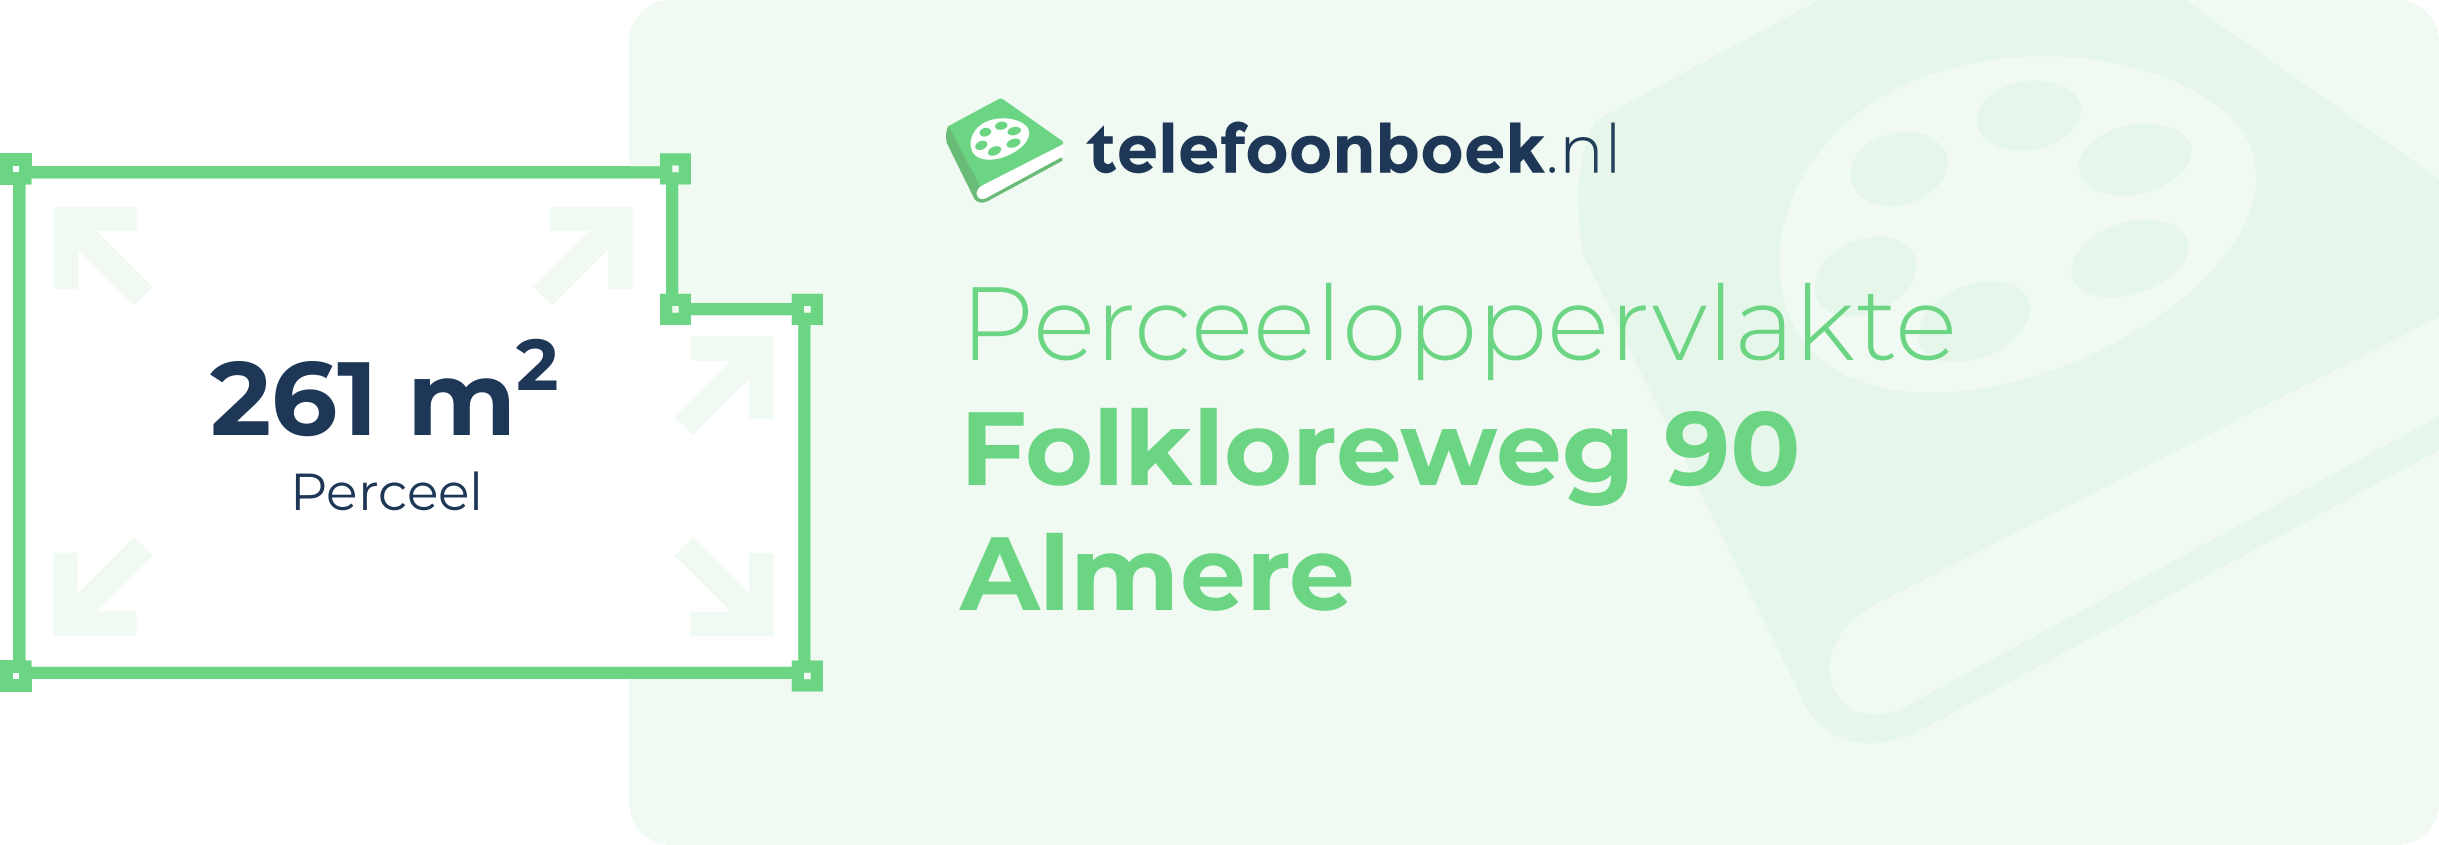 Perceeloppervlakte Folkloreweg 90 Almere